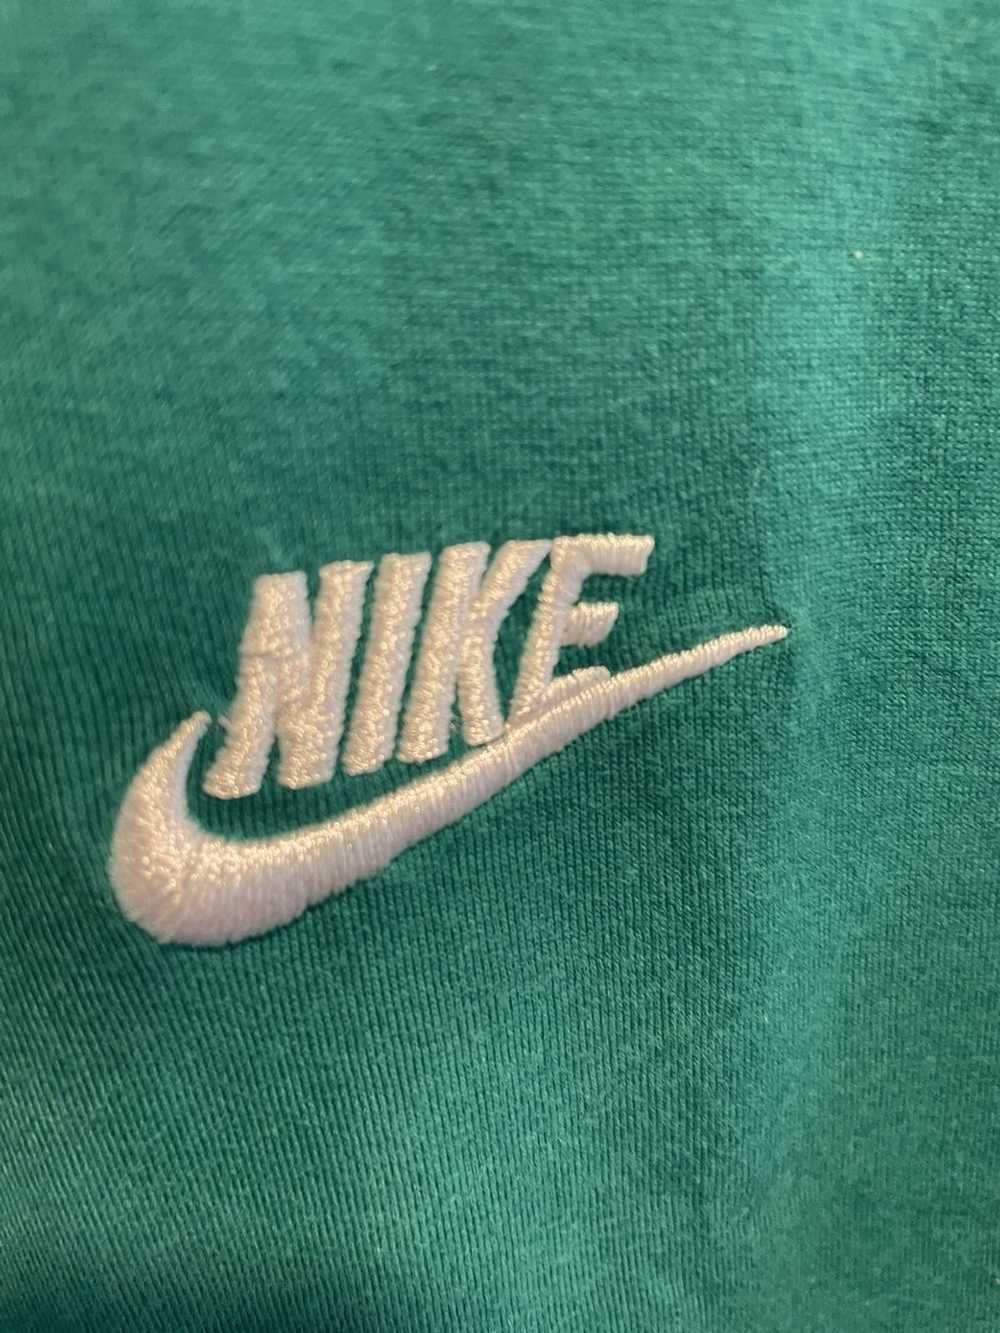 Nike Nike mini swoosh logo tee green xl - image 4